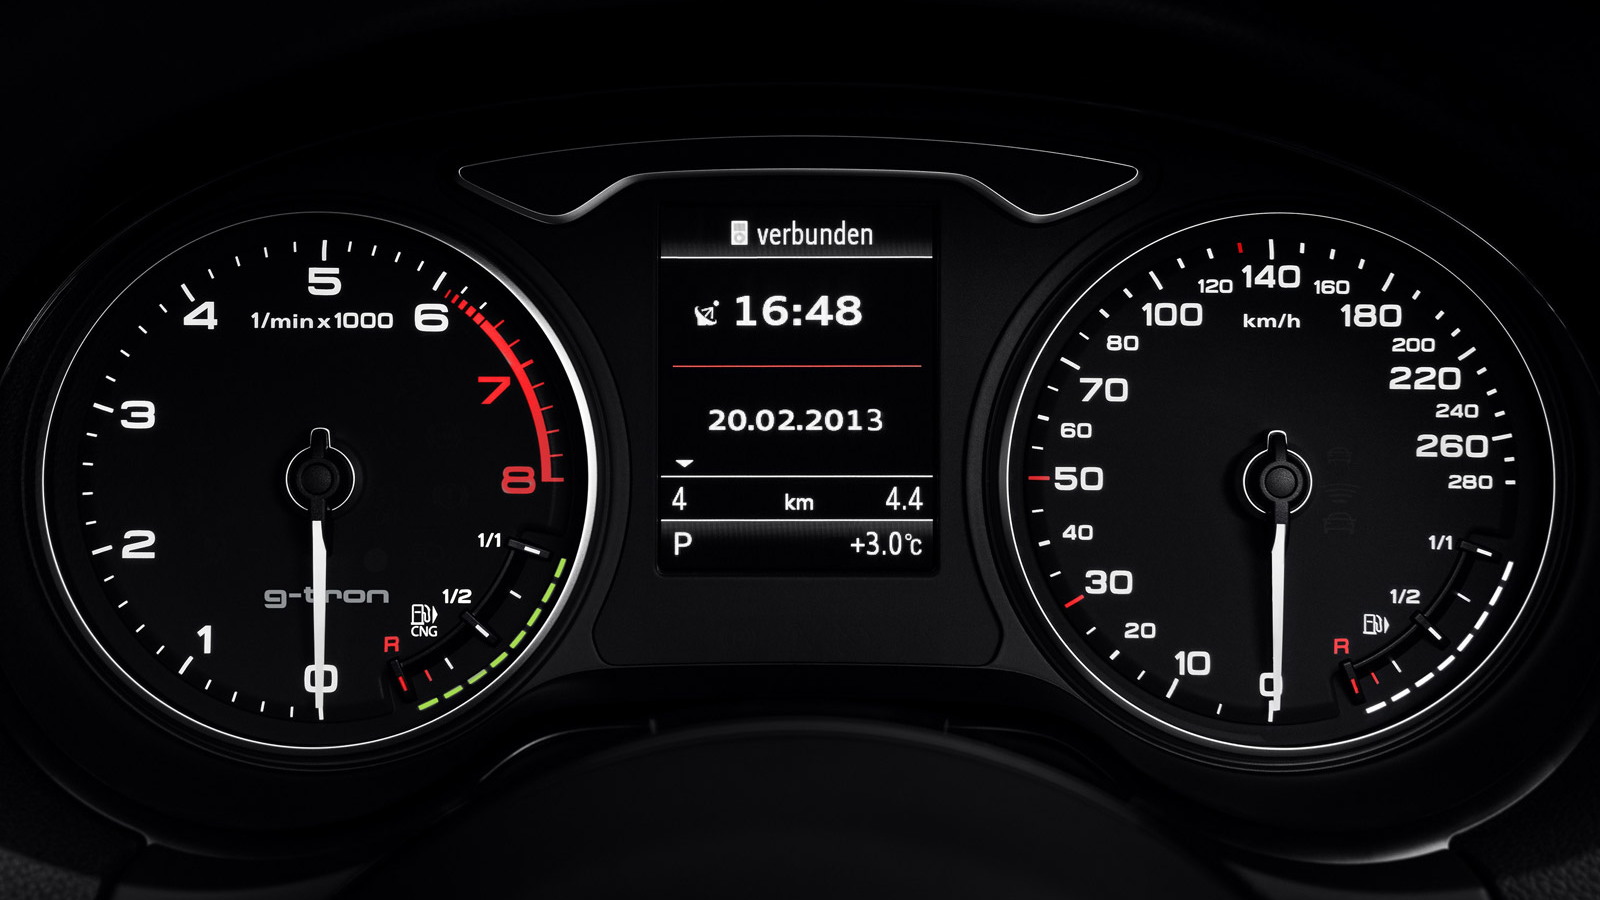 2014 Audi A3 g-tron